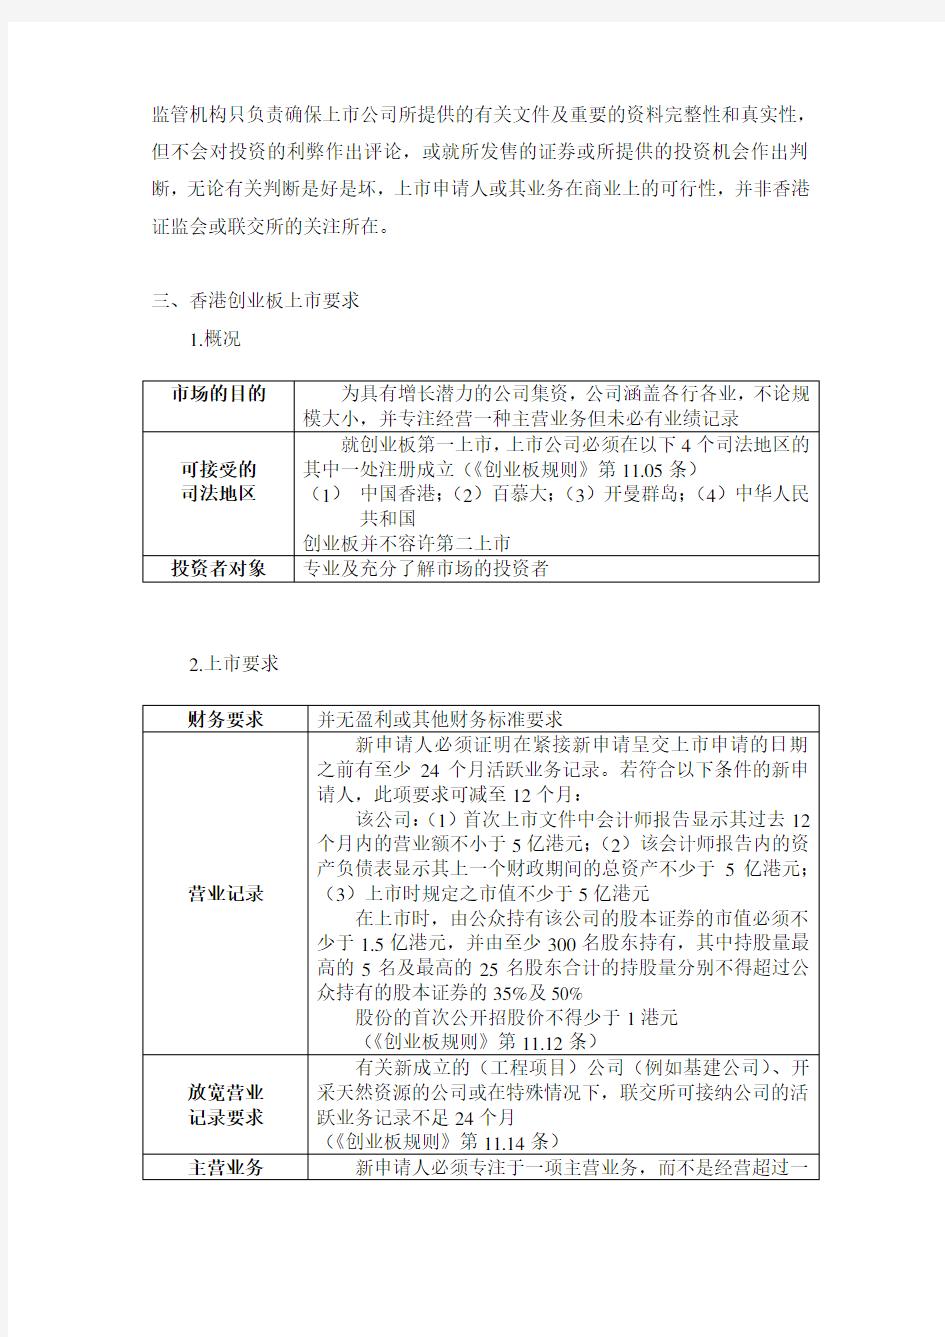 香港创业板上市规则及操作指引